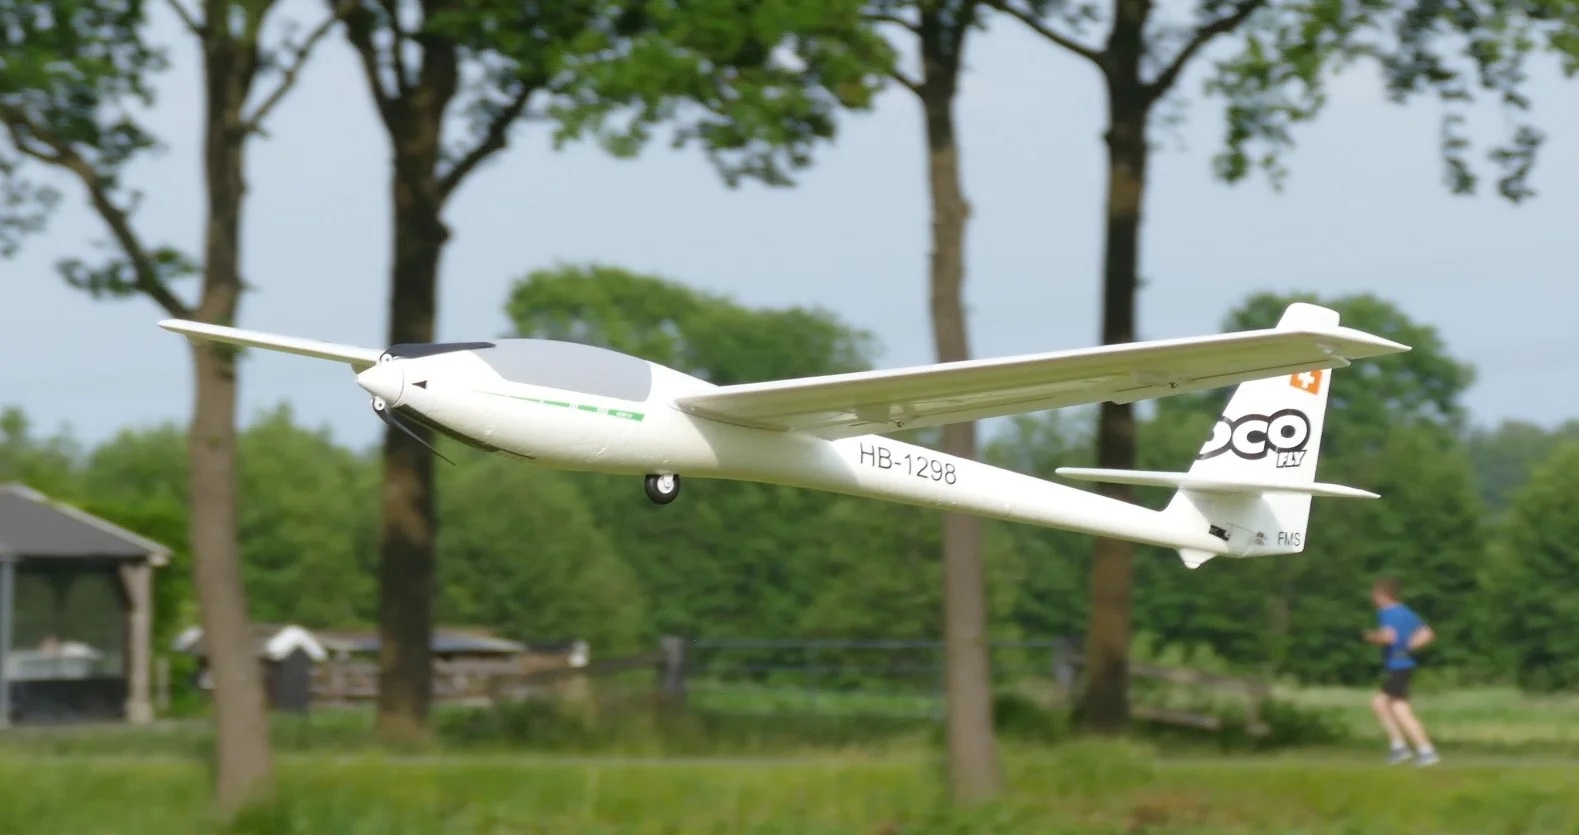 Verrast Laboratorium compromis Vliegen met modelvliegtuigen is hobby voor alle leeftijd | EEMLAND1